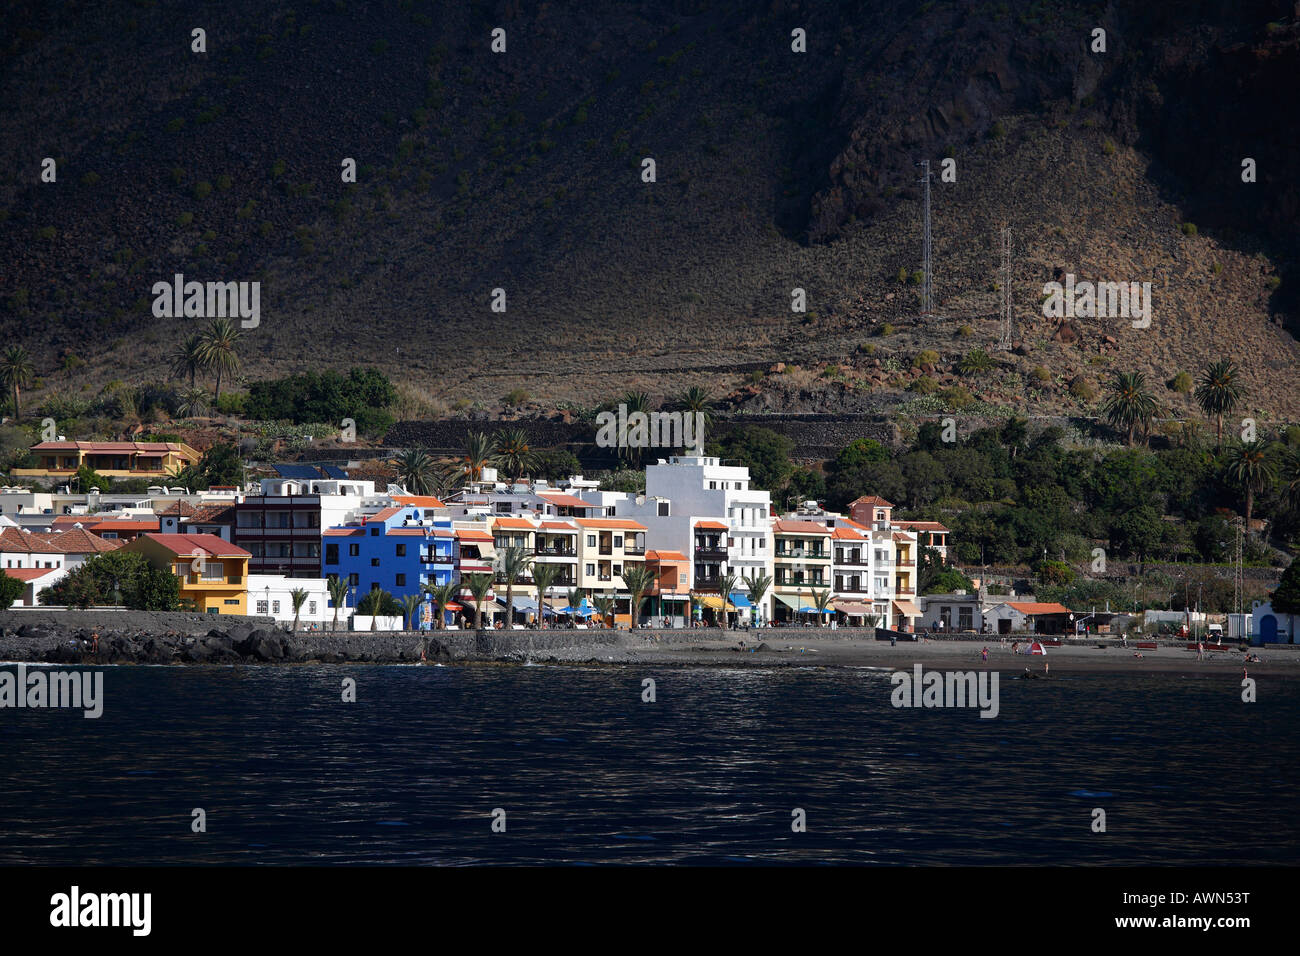 La Playa, Valle Gran Rey, vue du bateau, La Gomera, Canary Islands, Spain Banque D'Images